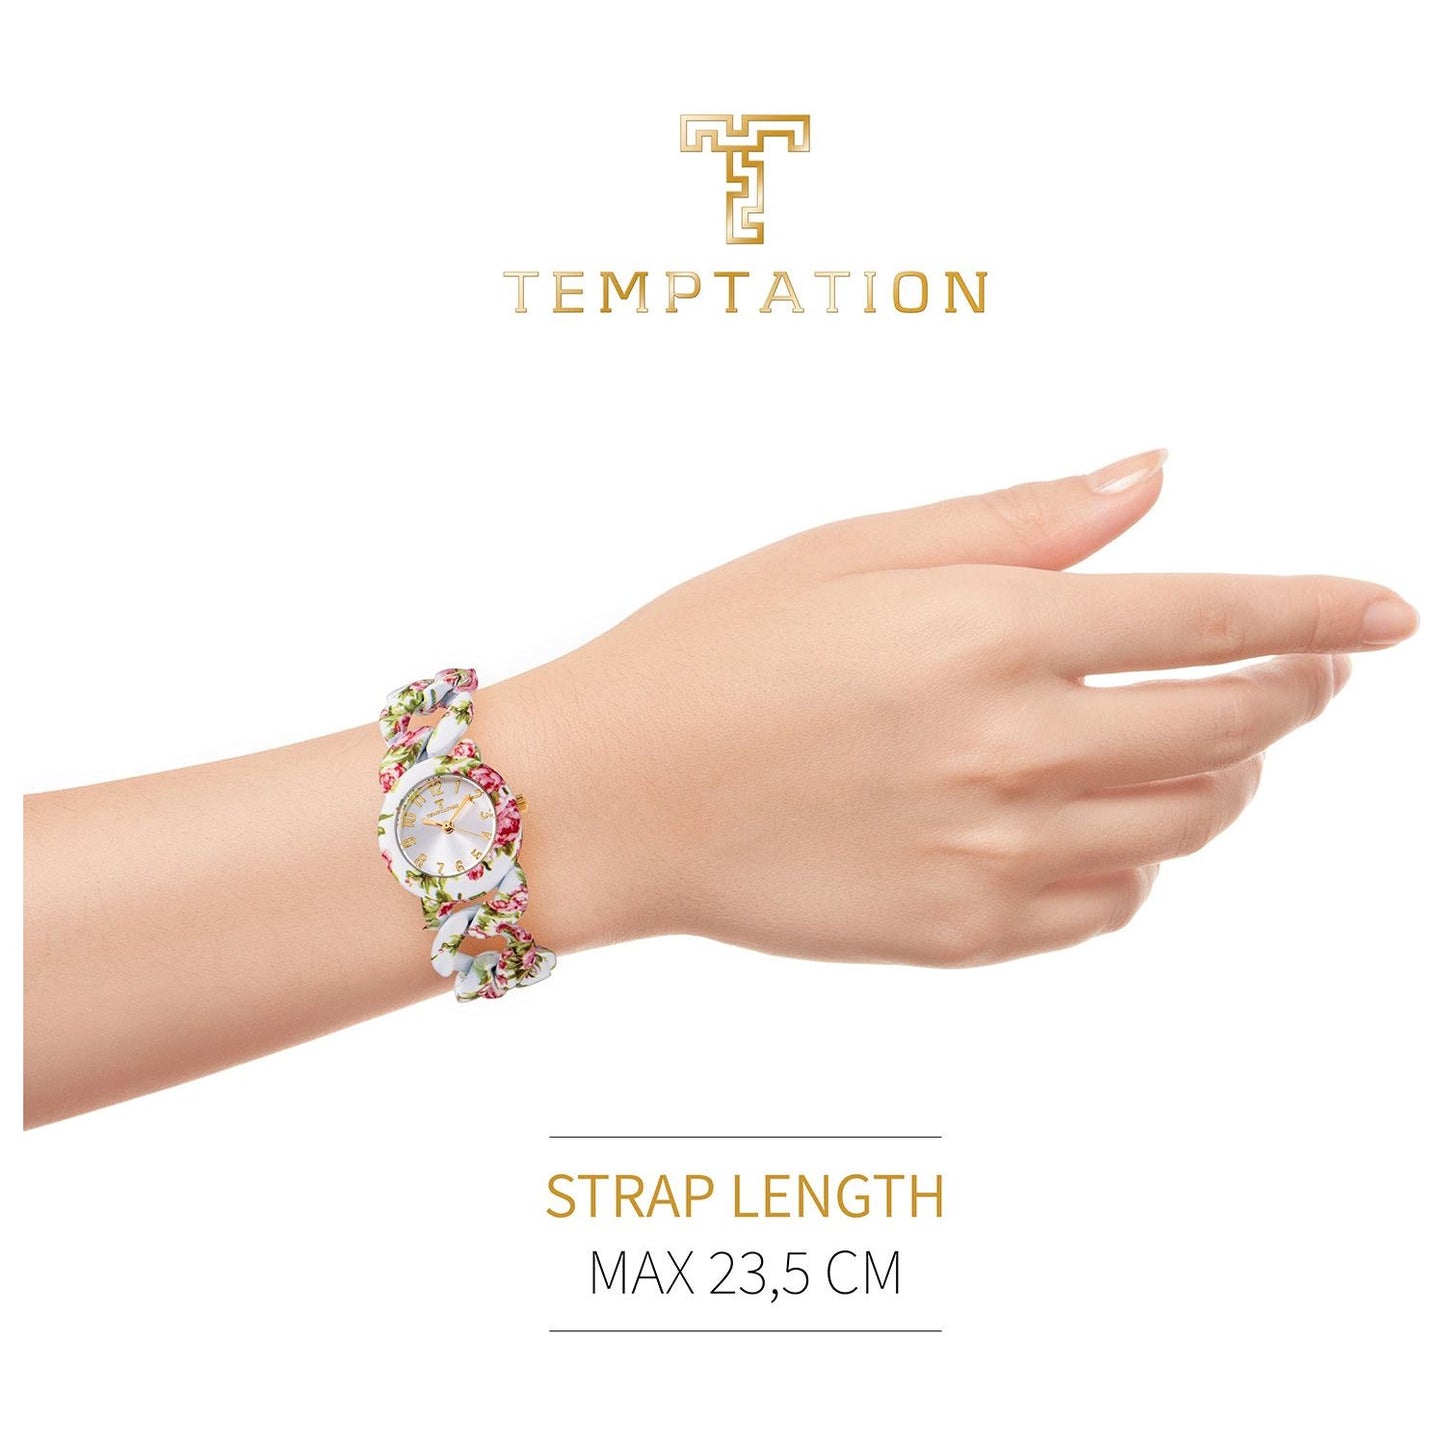 TEMPTATION TEMPTATION MOD. TEA-2015-02 WATCHES temptation-mod-tea-2015-2